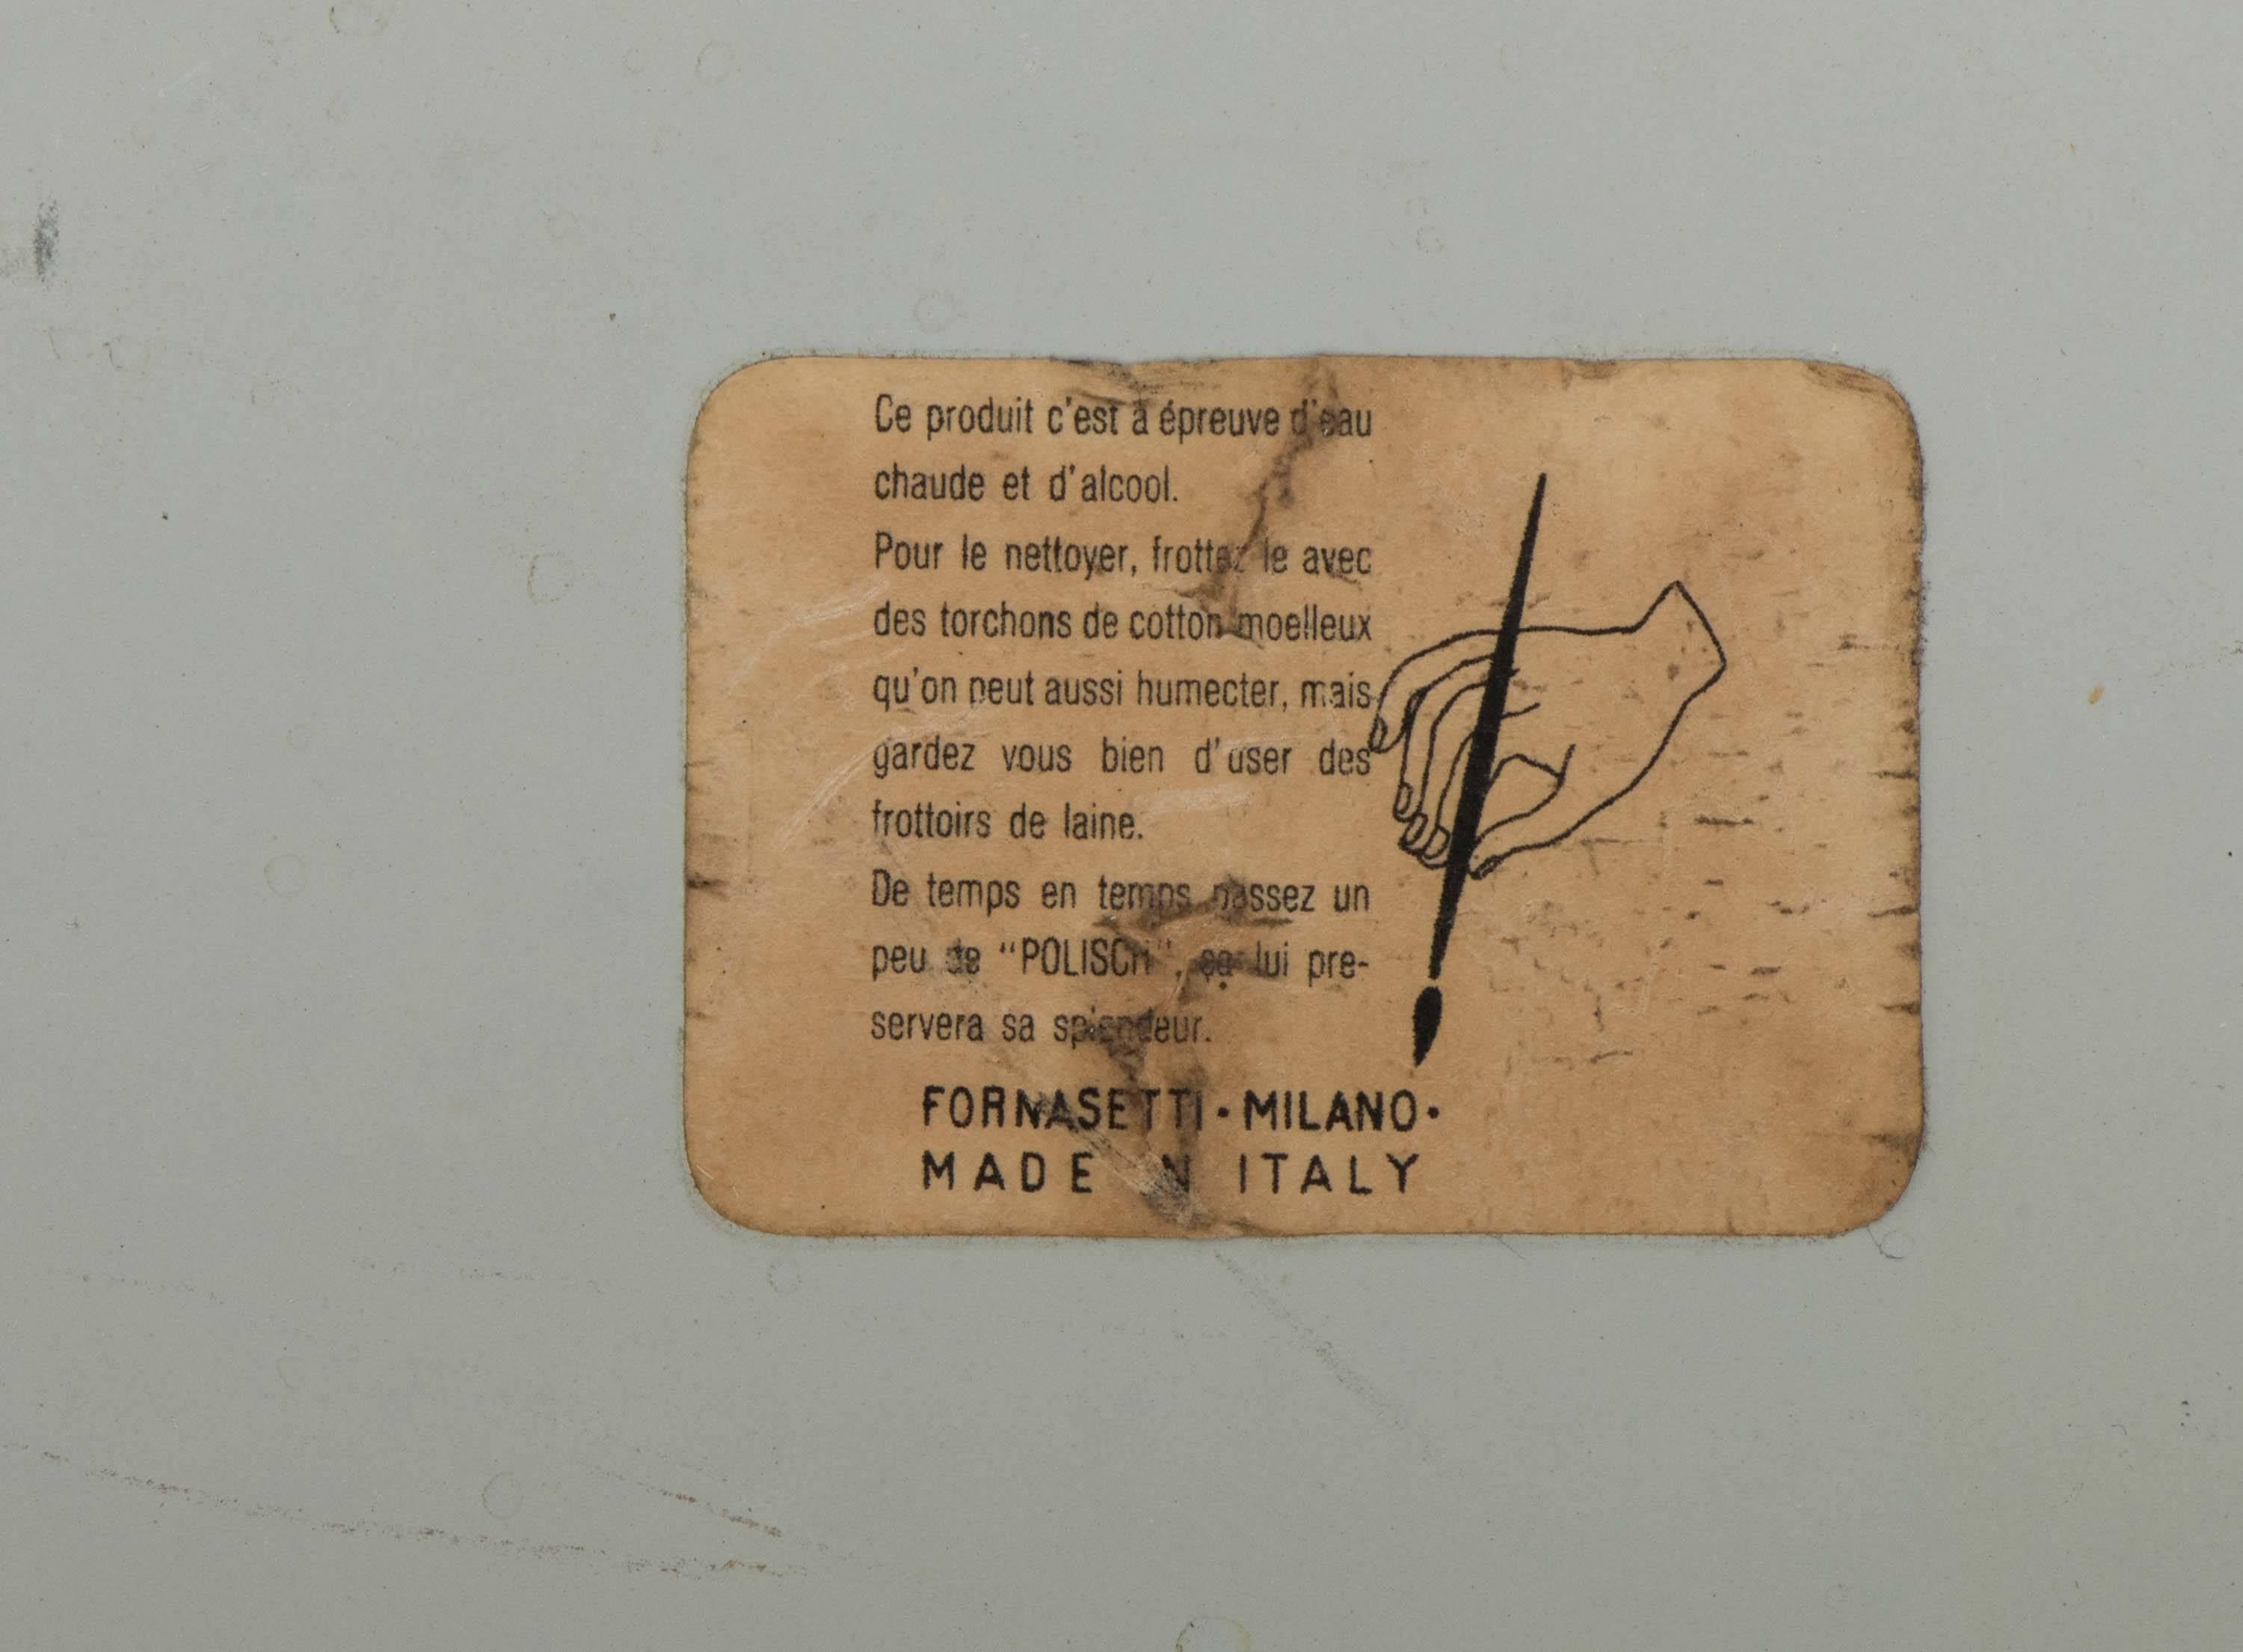 Metal Piero Fornasetti metal tray “Monete”, Italy circa 1950 For Sale